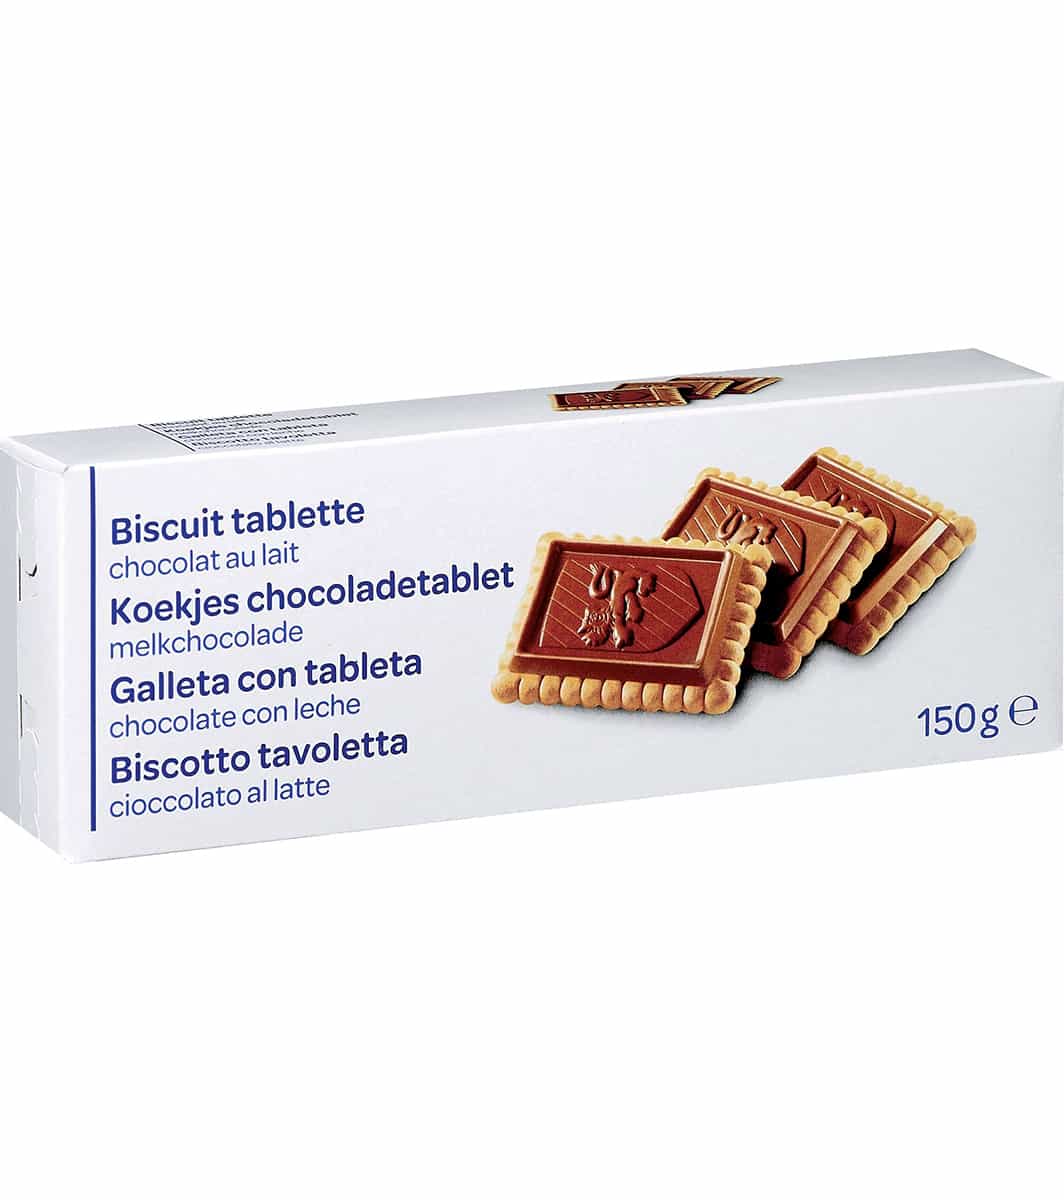 Biscuits Tablette Chocolat Au Lait Carrefour Market